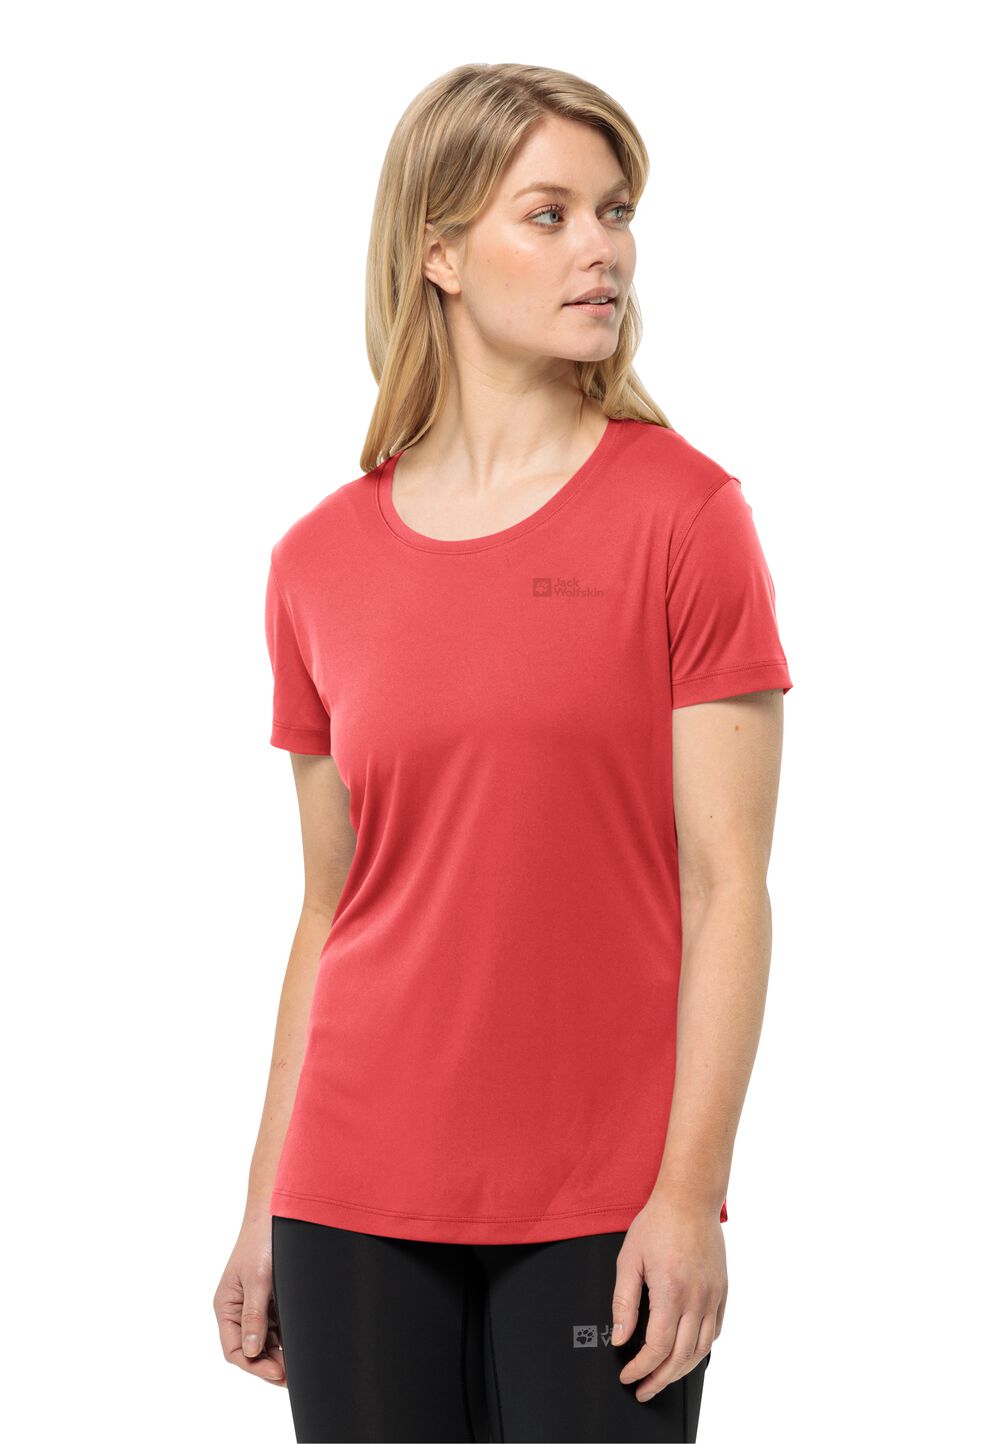 Jack Wolfskin Funktionsshirt Damen Tech T-Shirt Women XS rot vibrant red von Jack Wolfskin